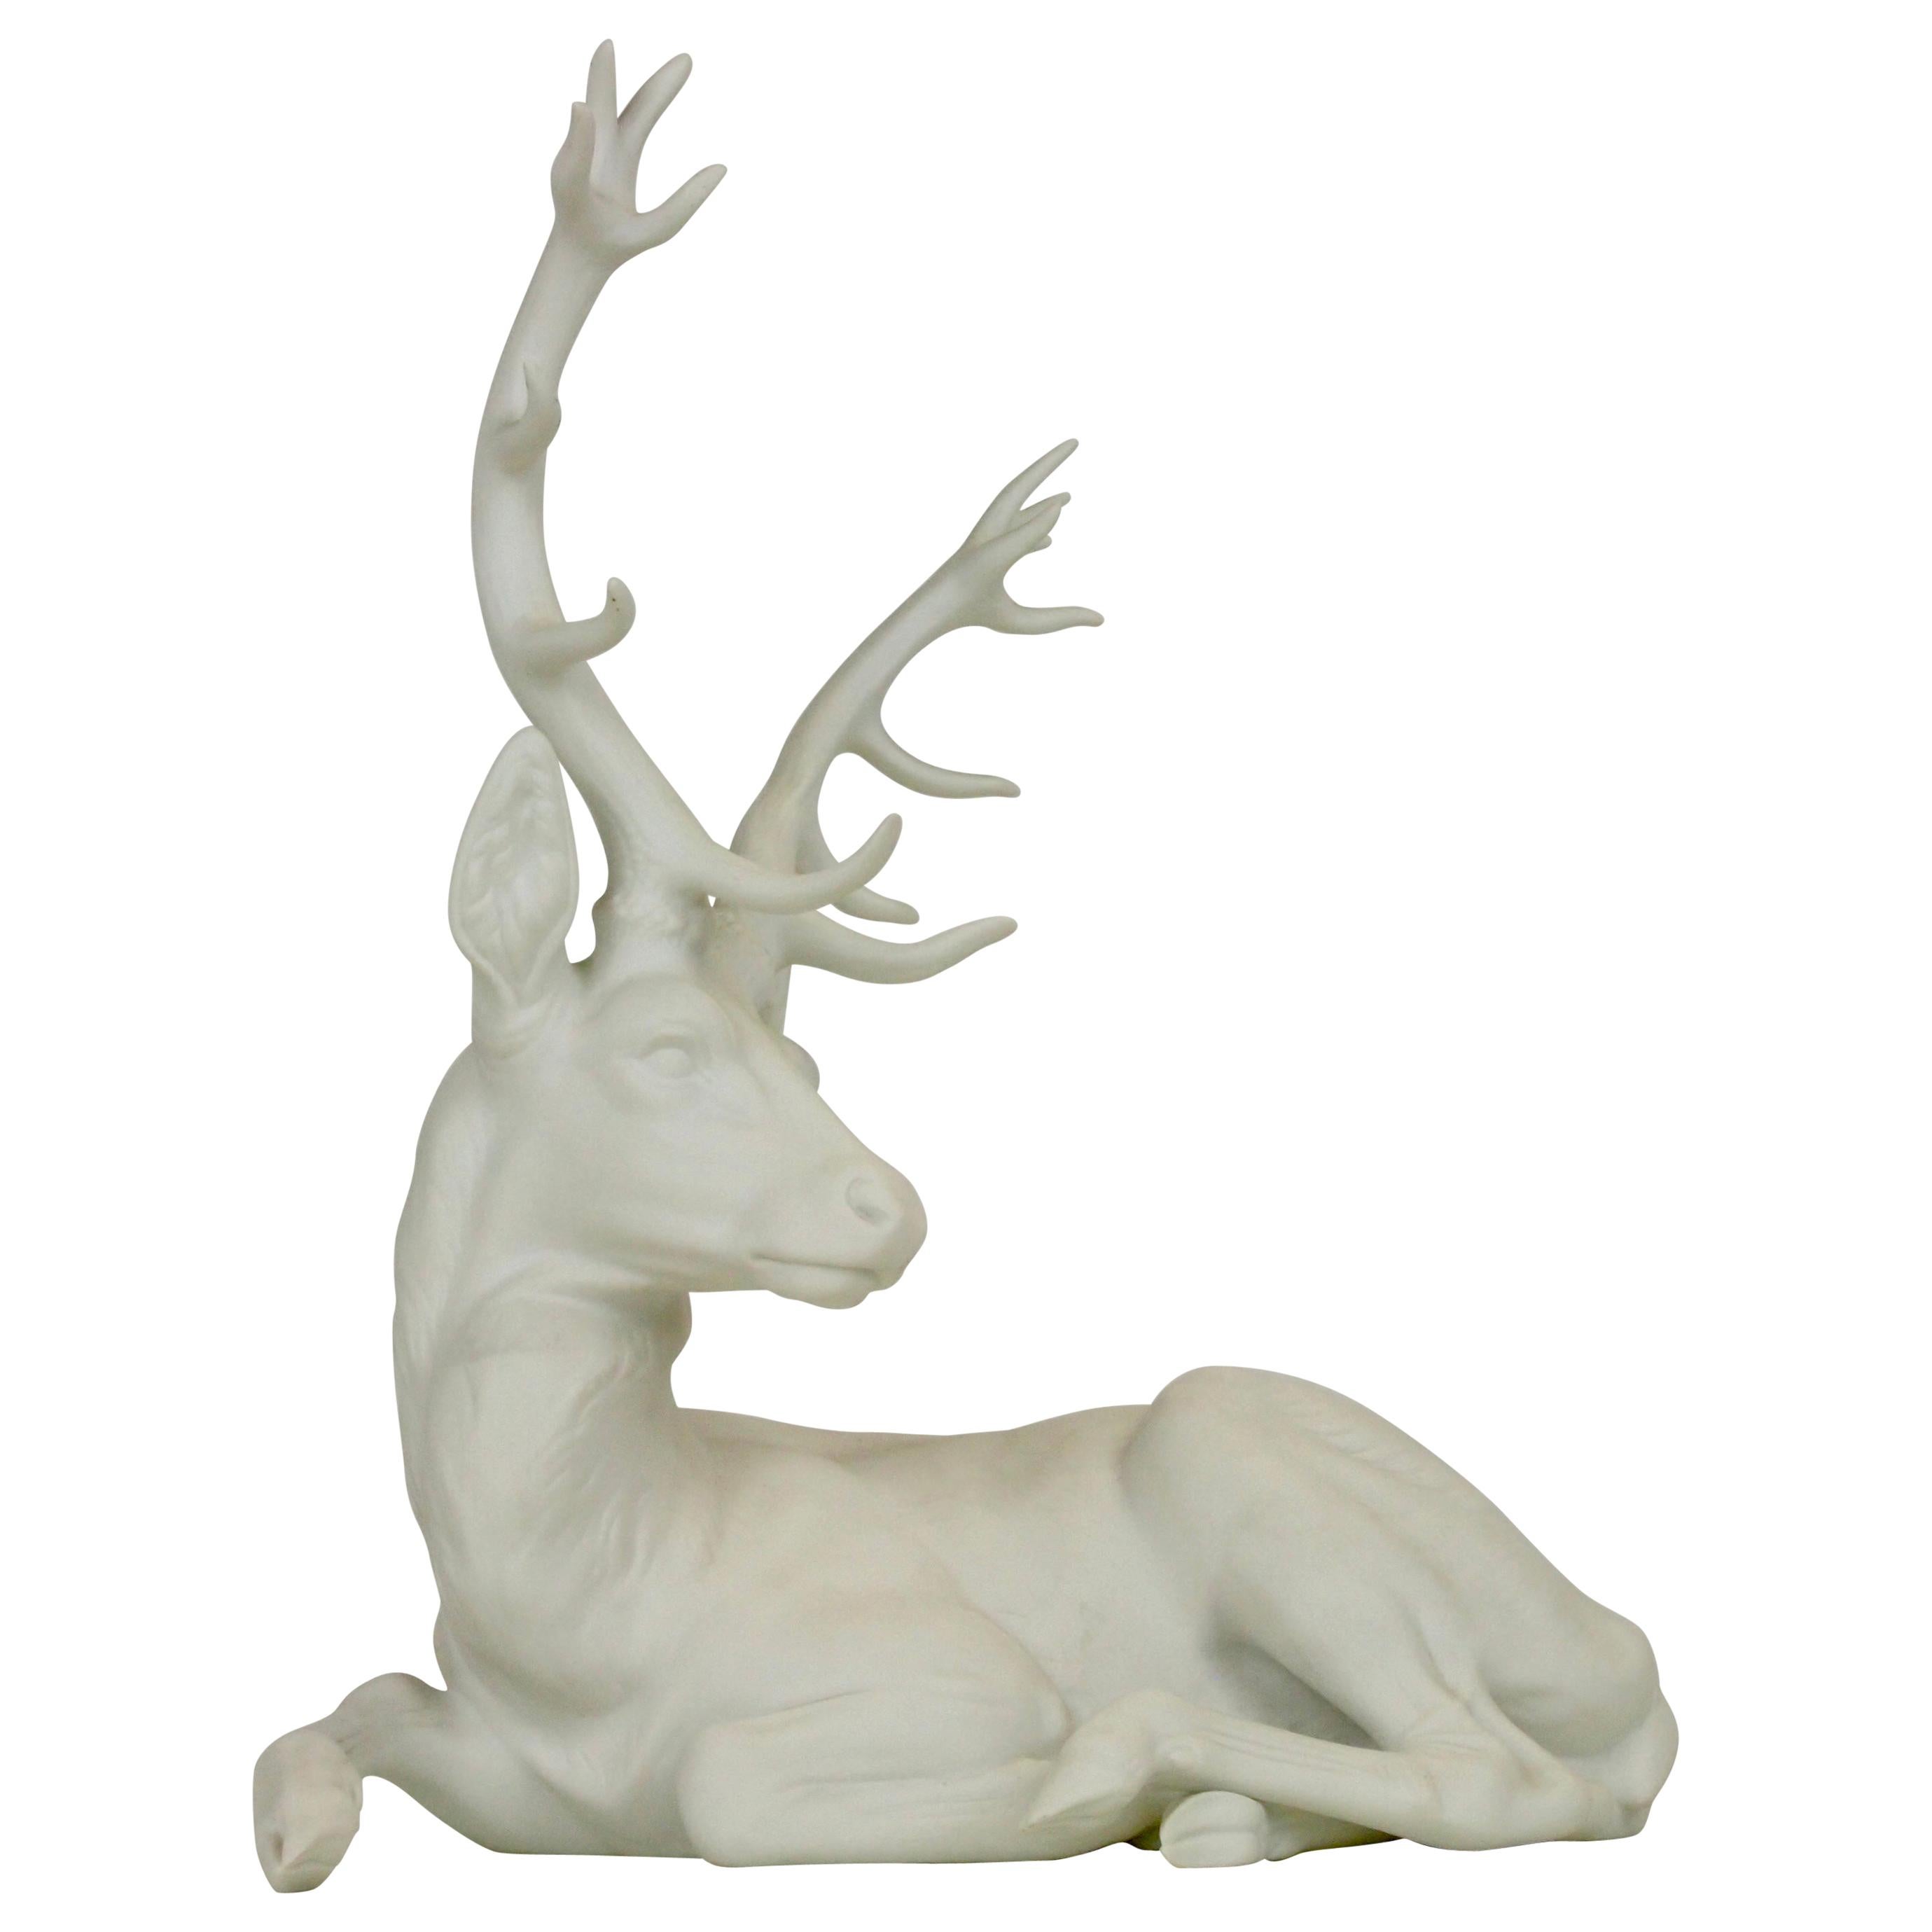 Nymphenburg Porcelain Figurine Depicting a Red Deer